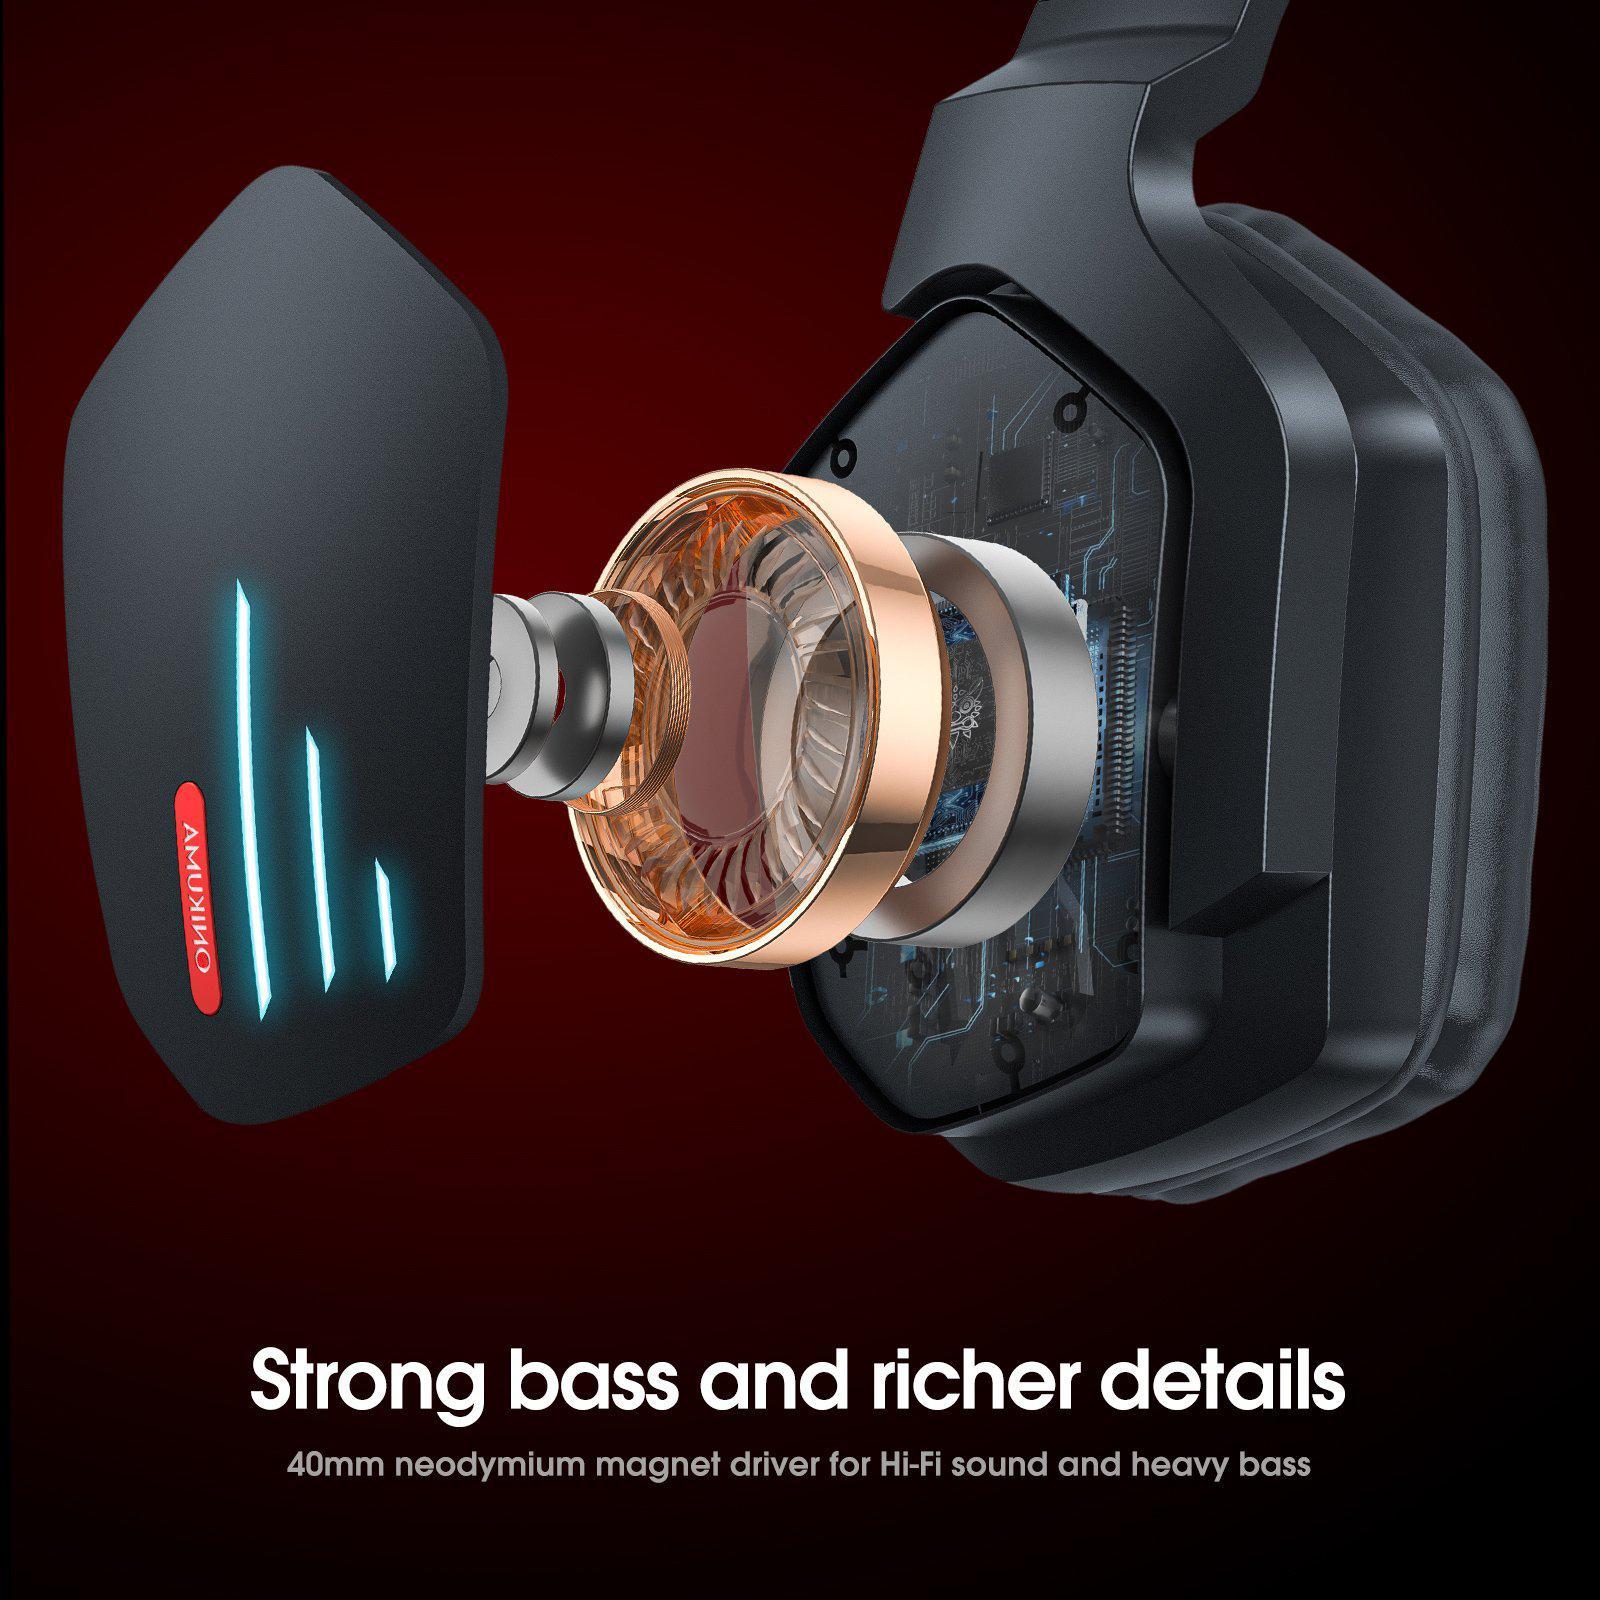 Strong bass and richer details | ONIKUMA B60 Wireless Bluetooth Gaming Headset